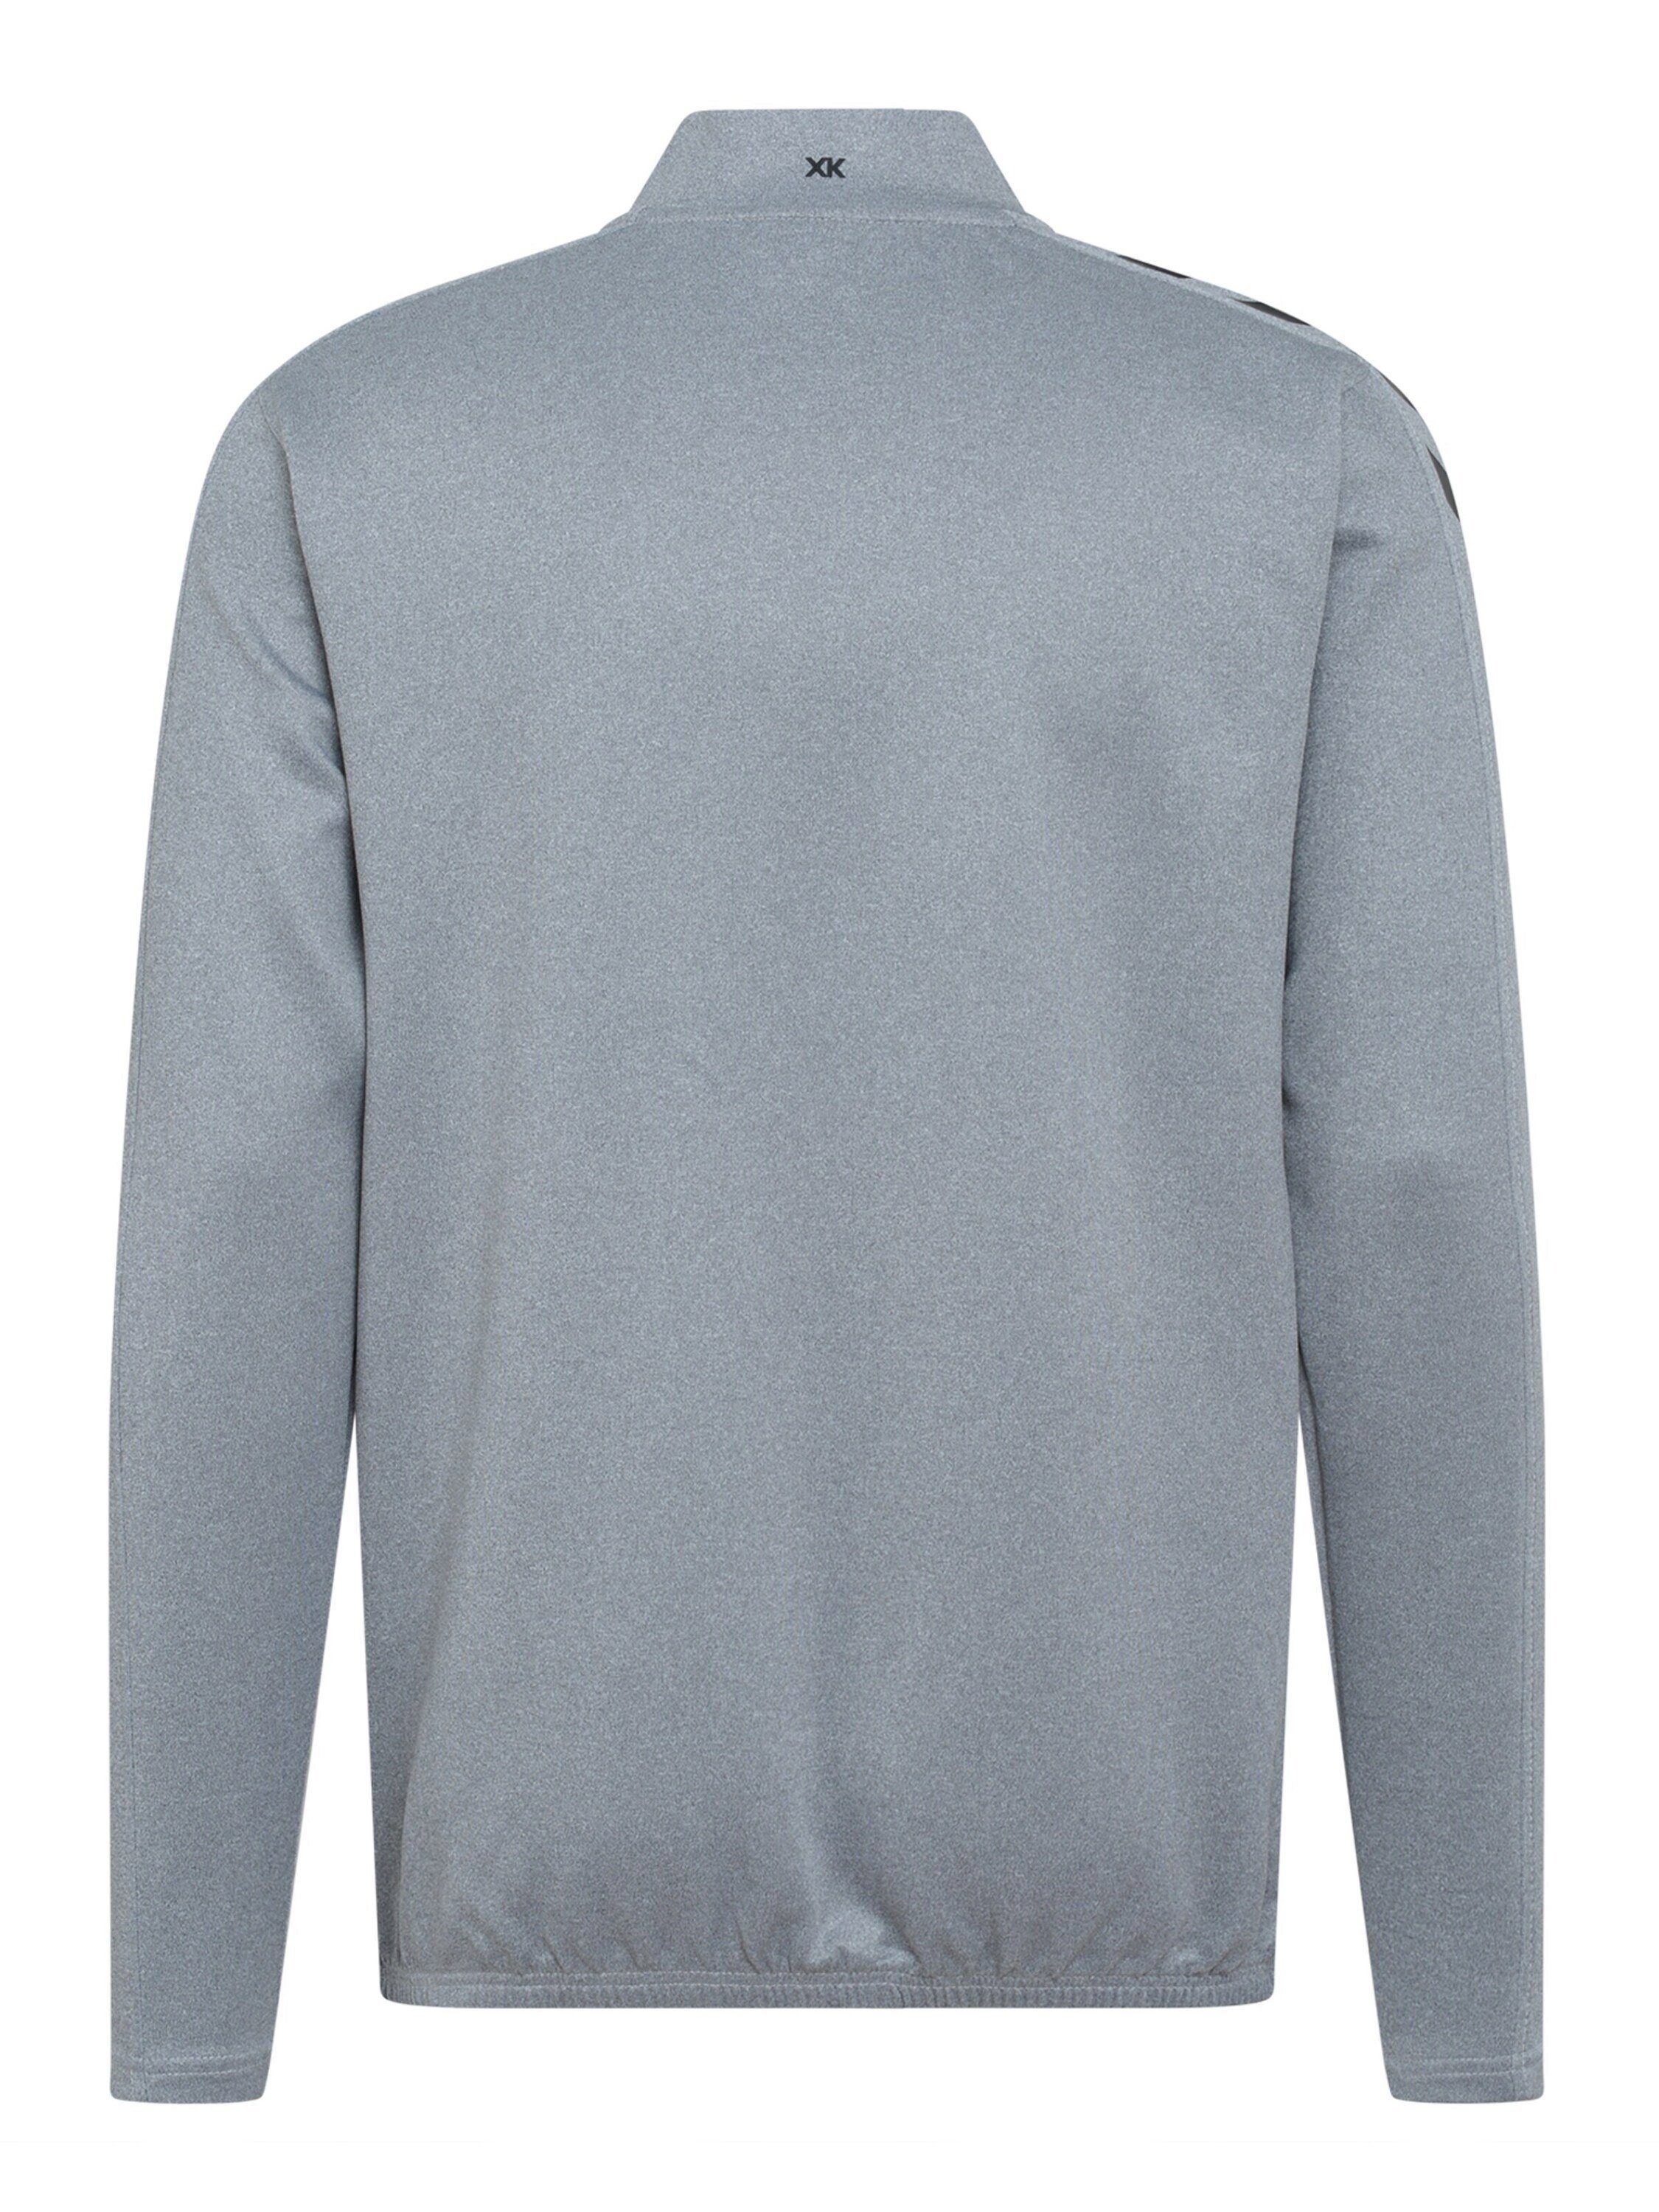 Sweatshirt Details grau (1-tlg) hummel Plain/ohne